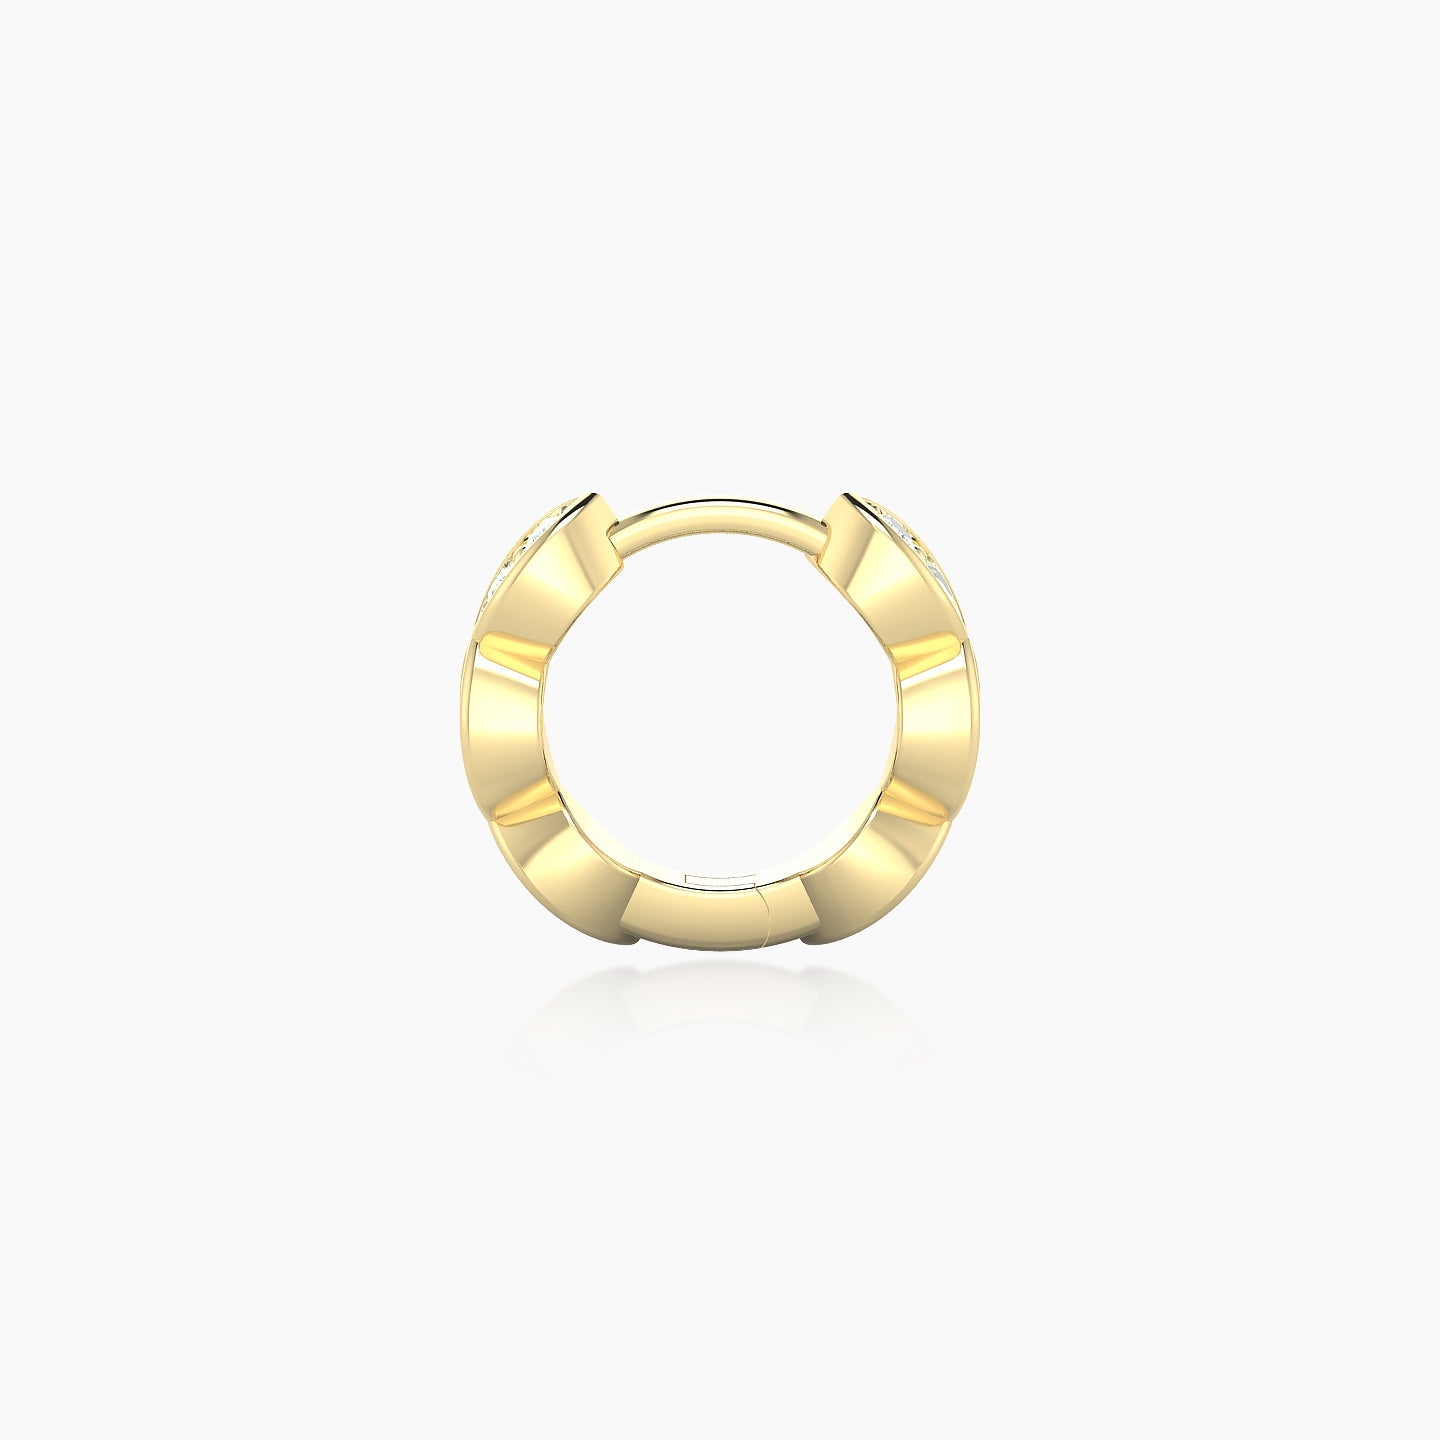 Hathor | 18k Yellow Gold 6.5 mm Diamond Nose Ring Piercing